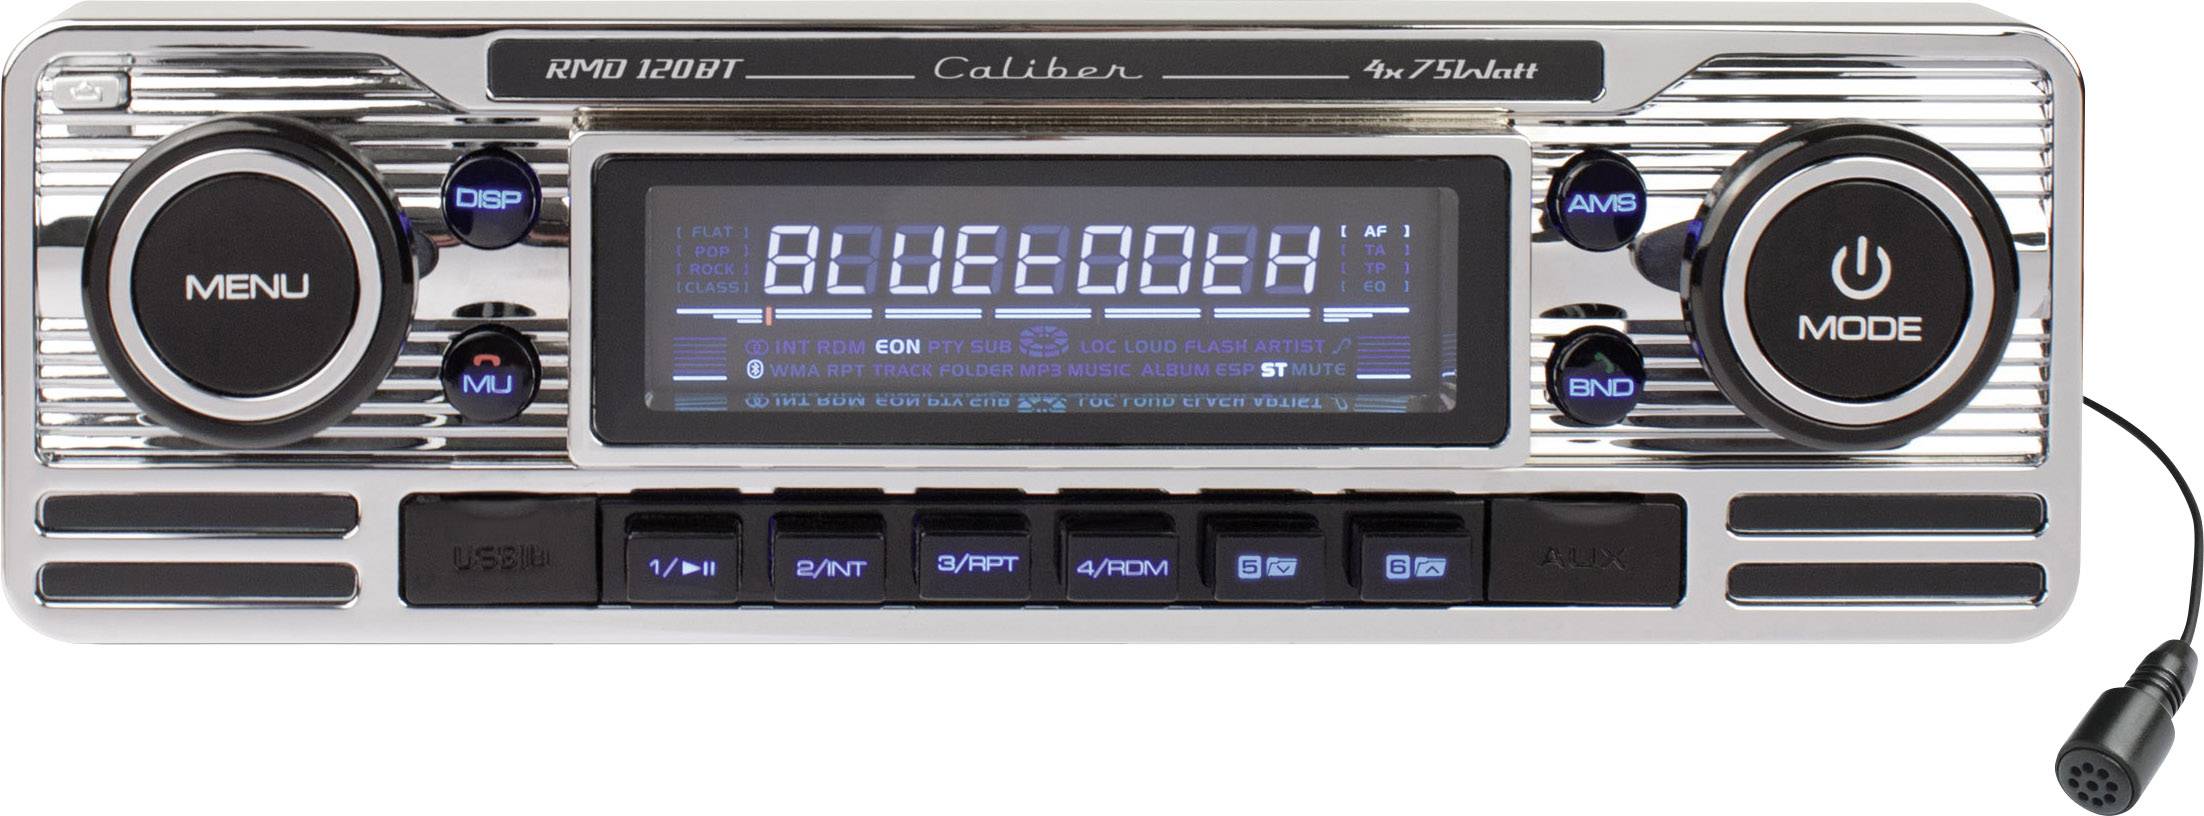 Supermarkt Redding wees onder de indruk Caliber RMD-120BT Car stereo Retro design, Bluetooth handsfree set |  Conrad.com